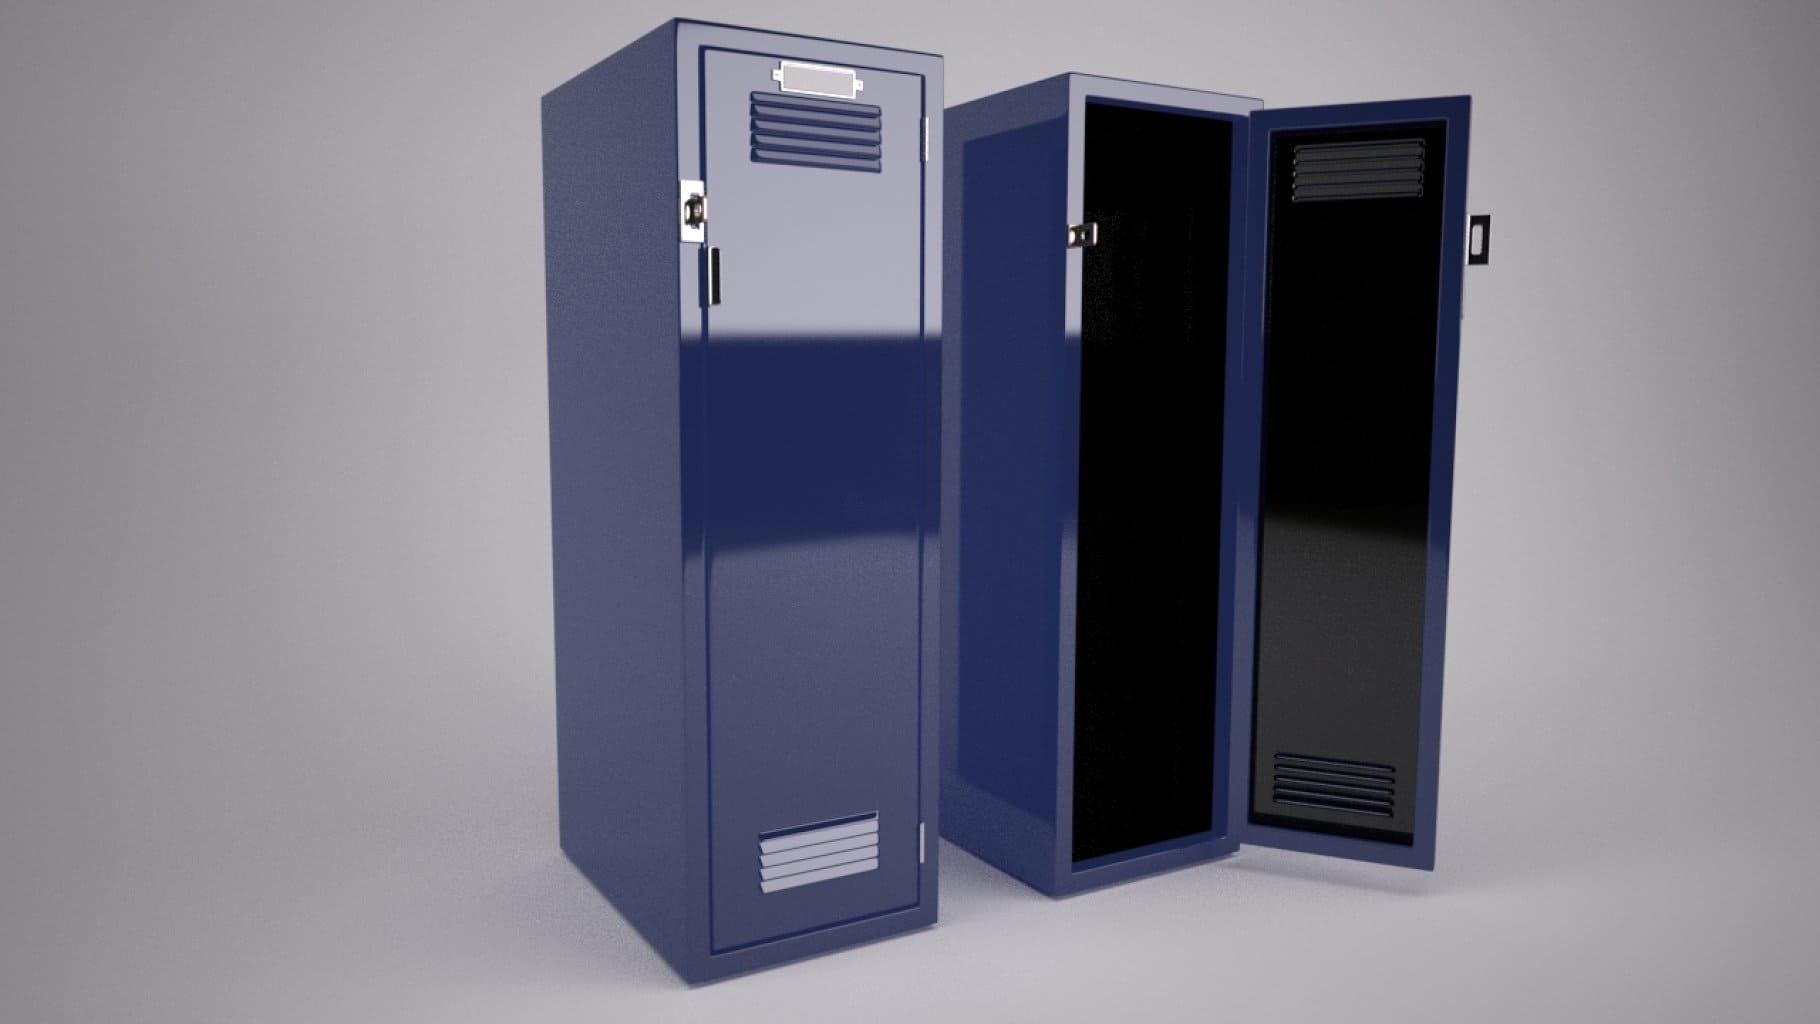 Blue metal school locker for storing things.